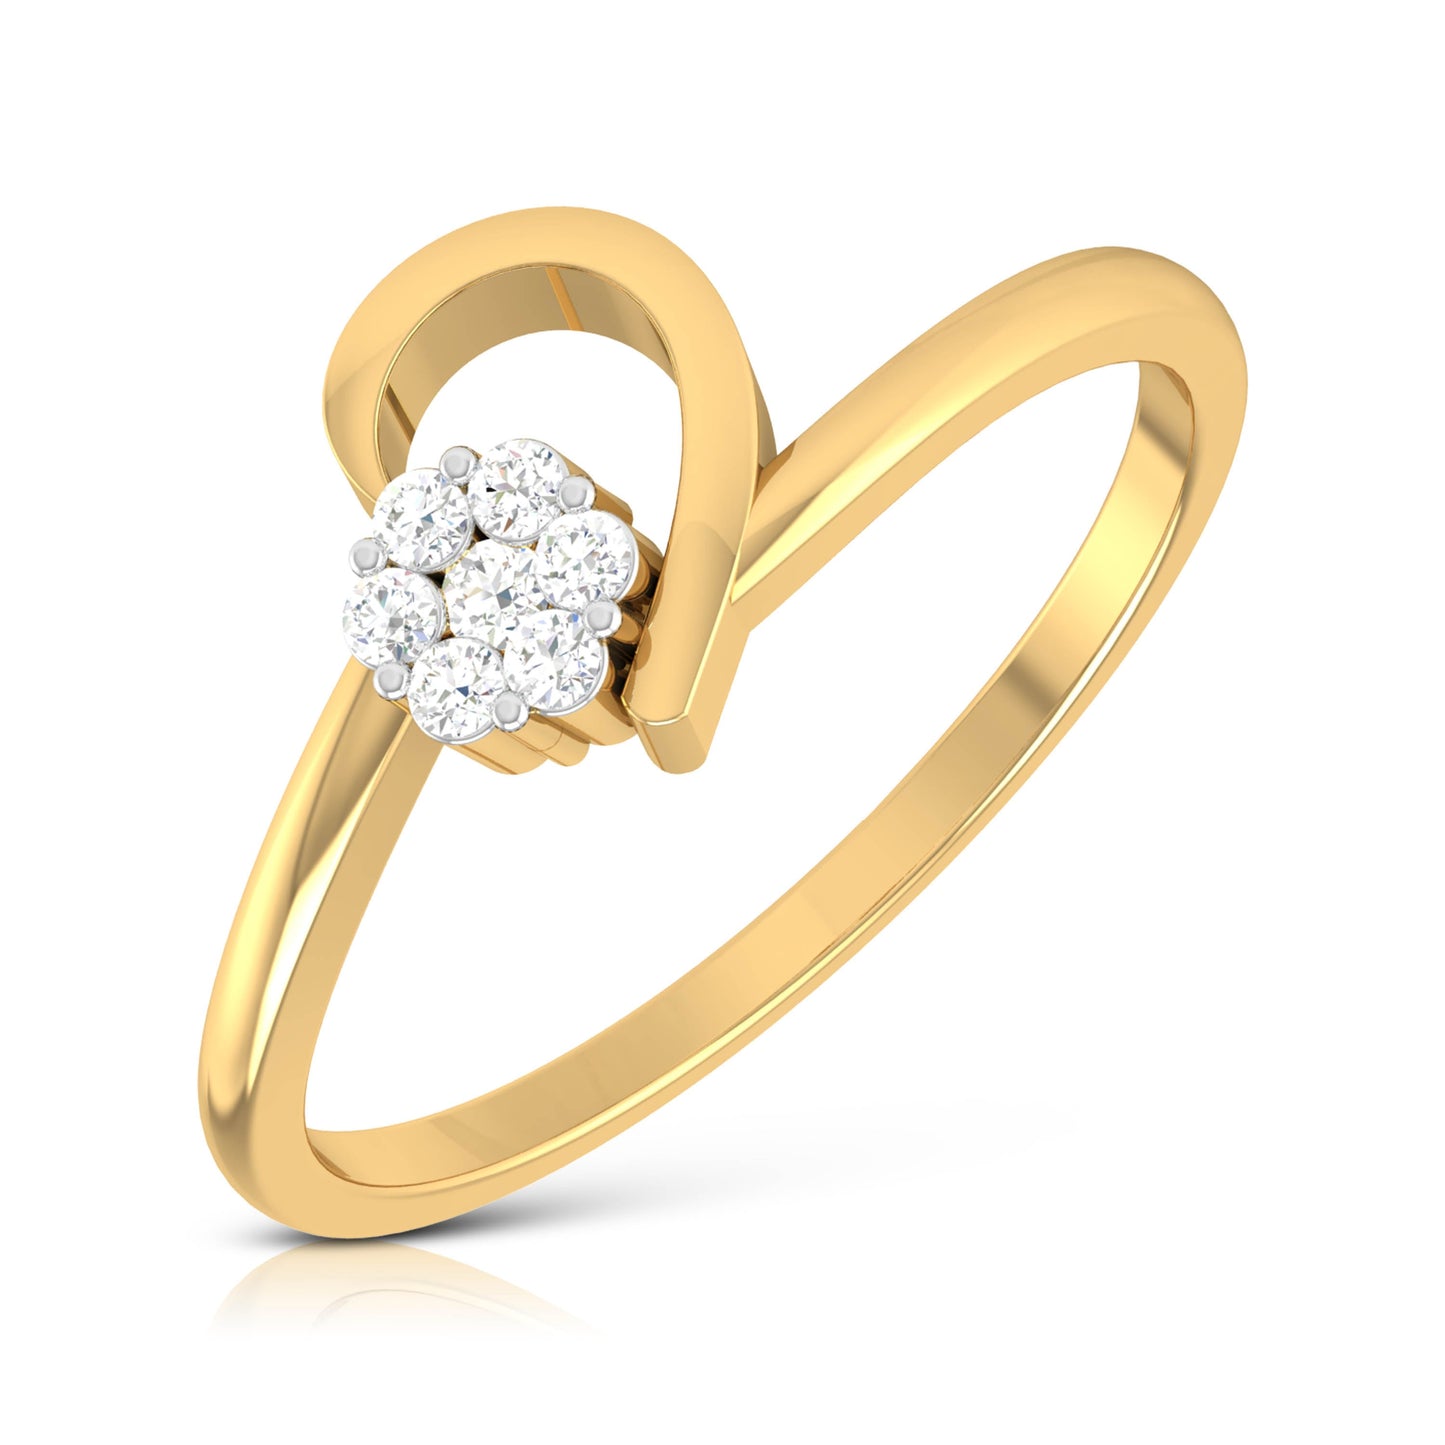 Luxury Wedding Rings Simple Design Couple Alliance Ring 6mm Width Band Ring  for Women Men Come Velvet Bag | Wish